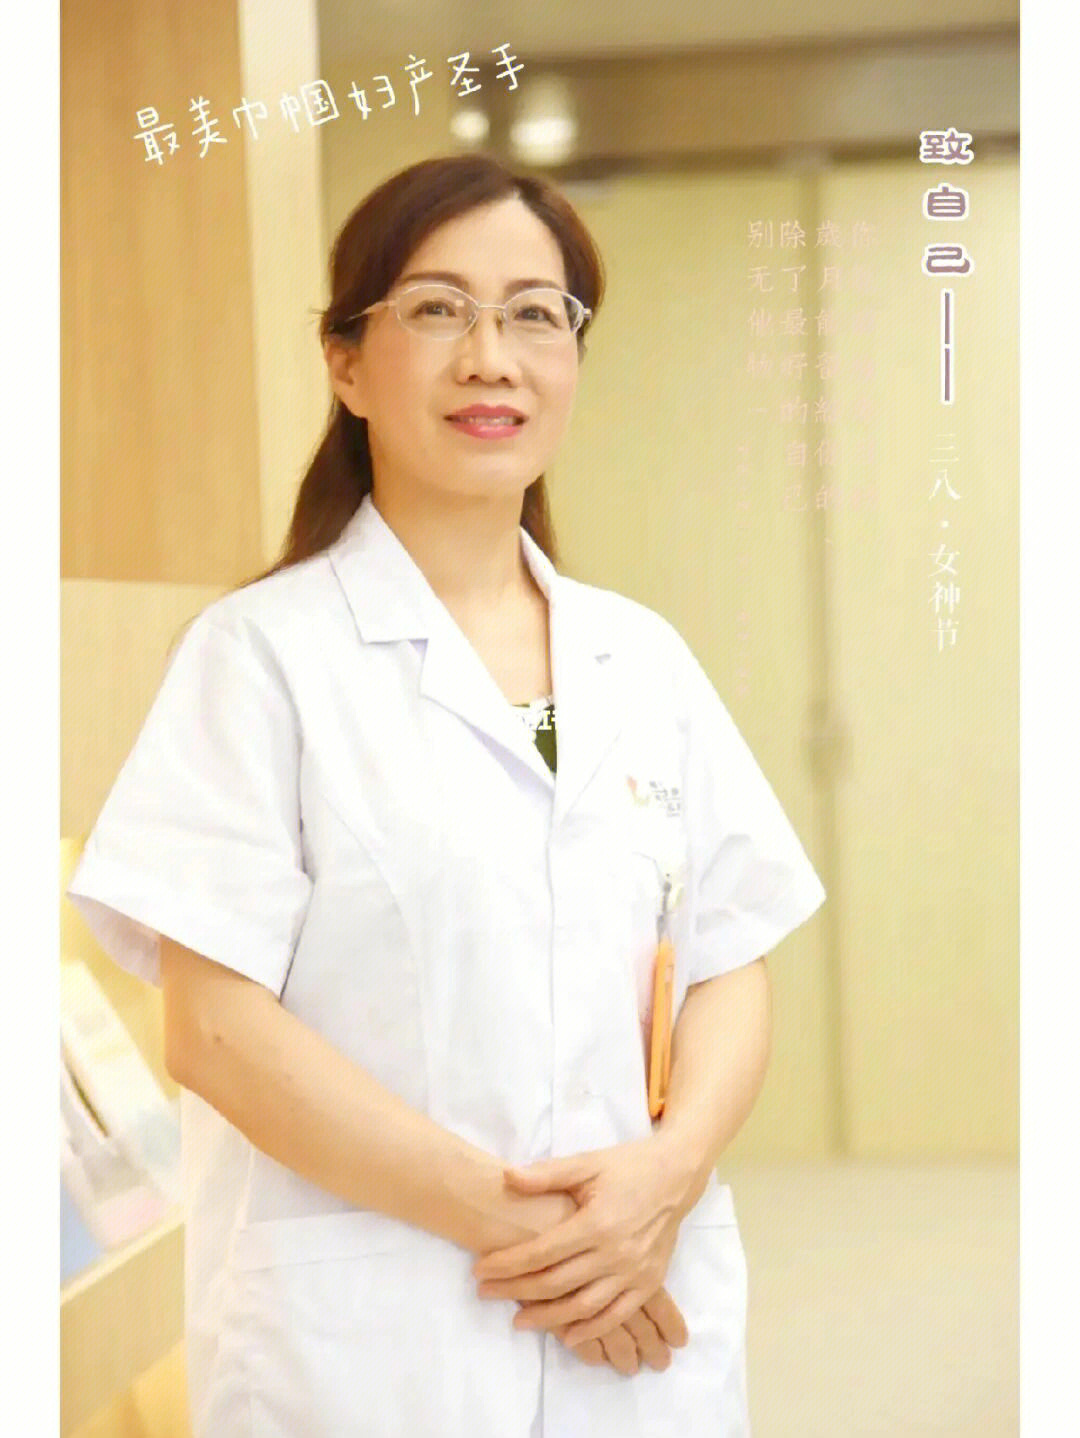 张云峰医生的个人主页图片